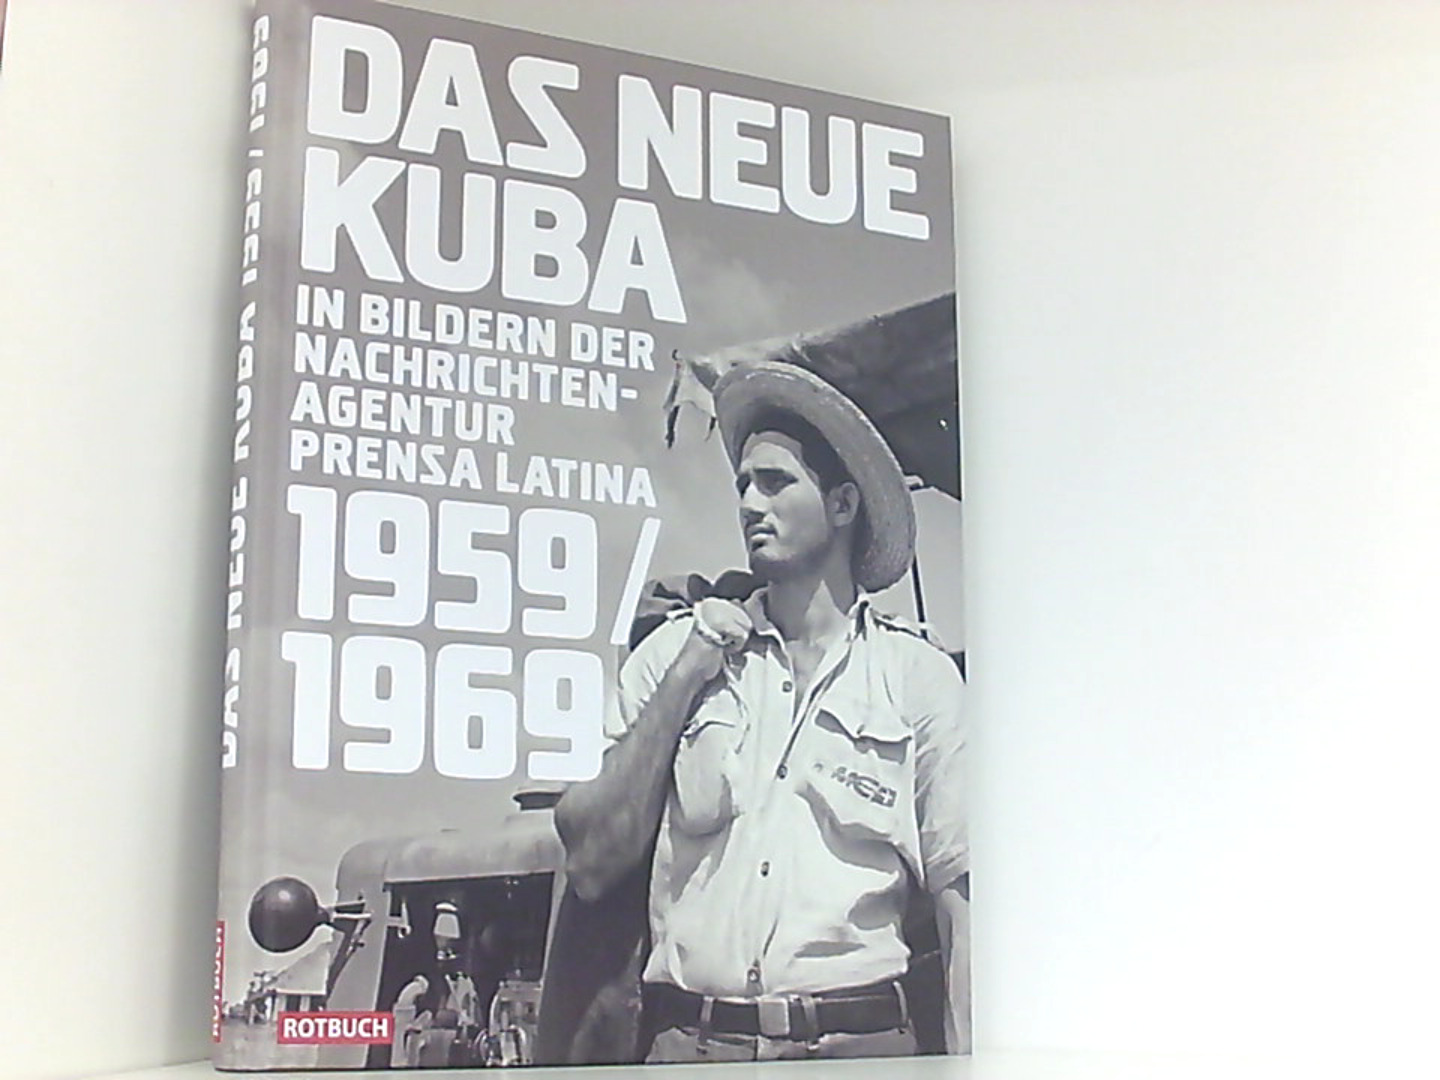 Das neue Kuba in Bildern der Nachrichtenagentur Prensa Latina 1959/1969 (Rotbuch) - Harald Neuber, (Herausgeber)